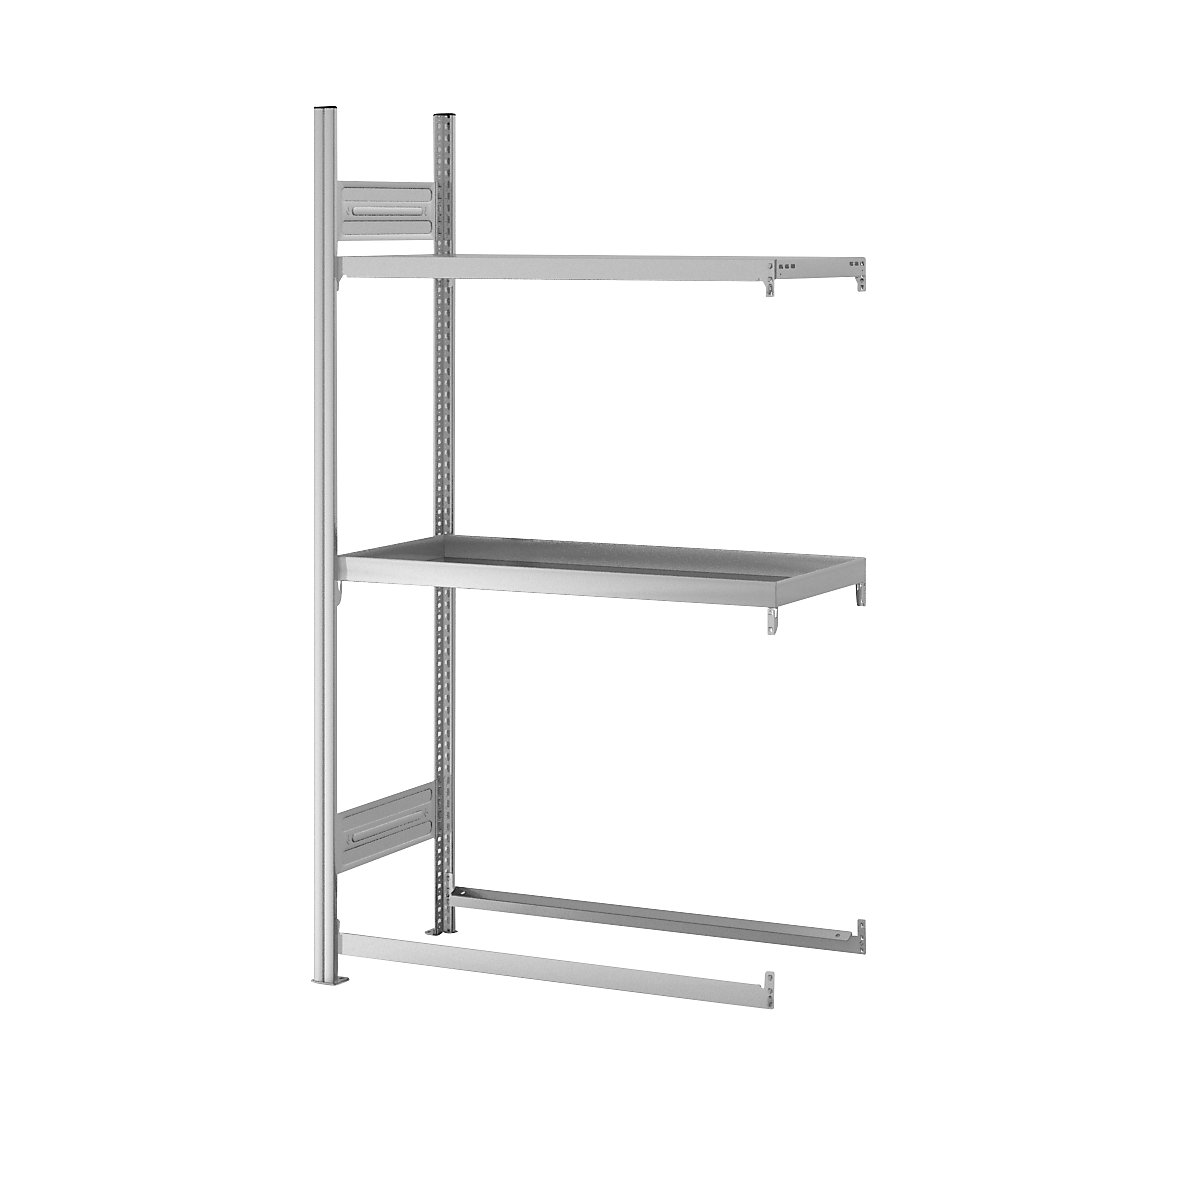 Warehouse and workshop multifunction shelf unit – hofe